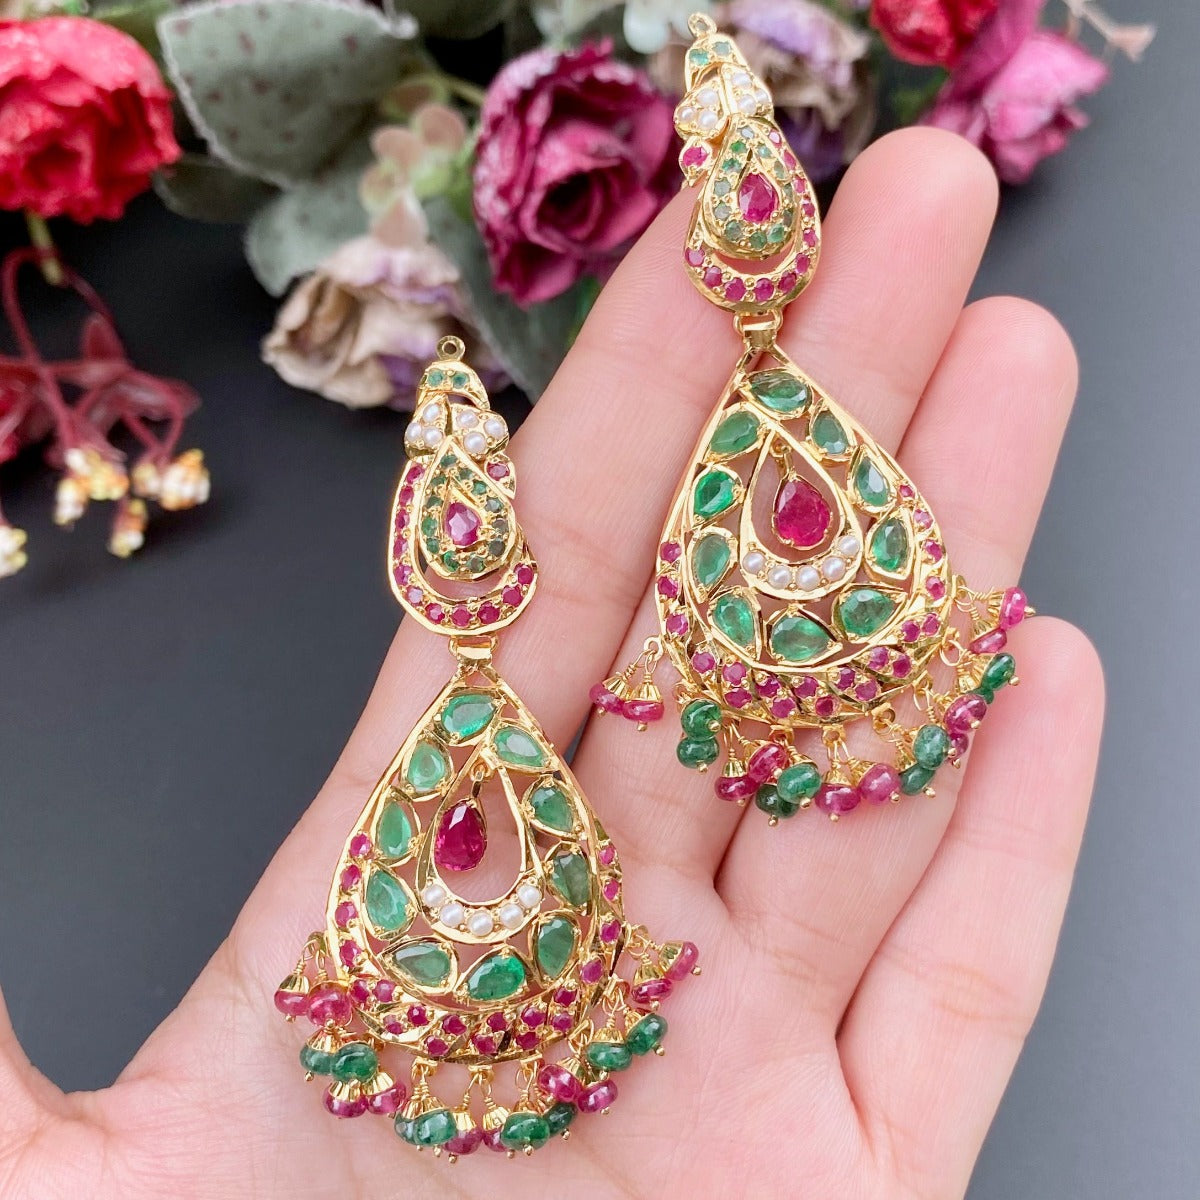 buy real gold jadau earrings in delhi